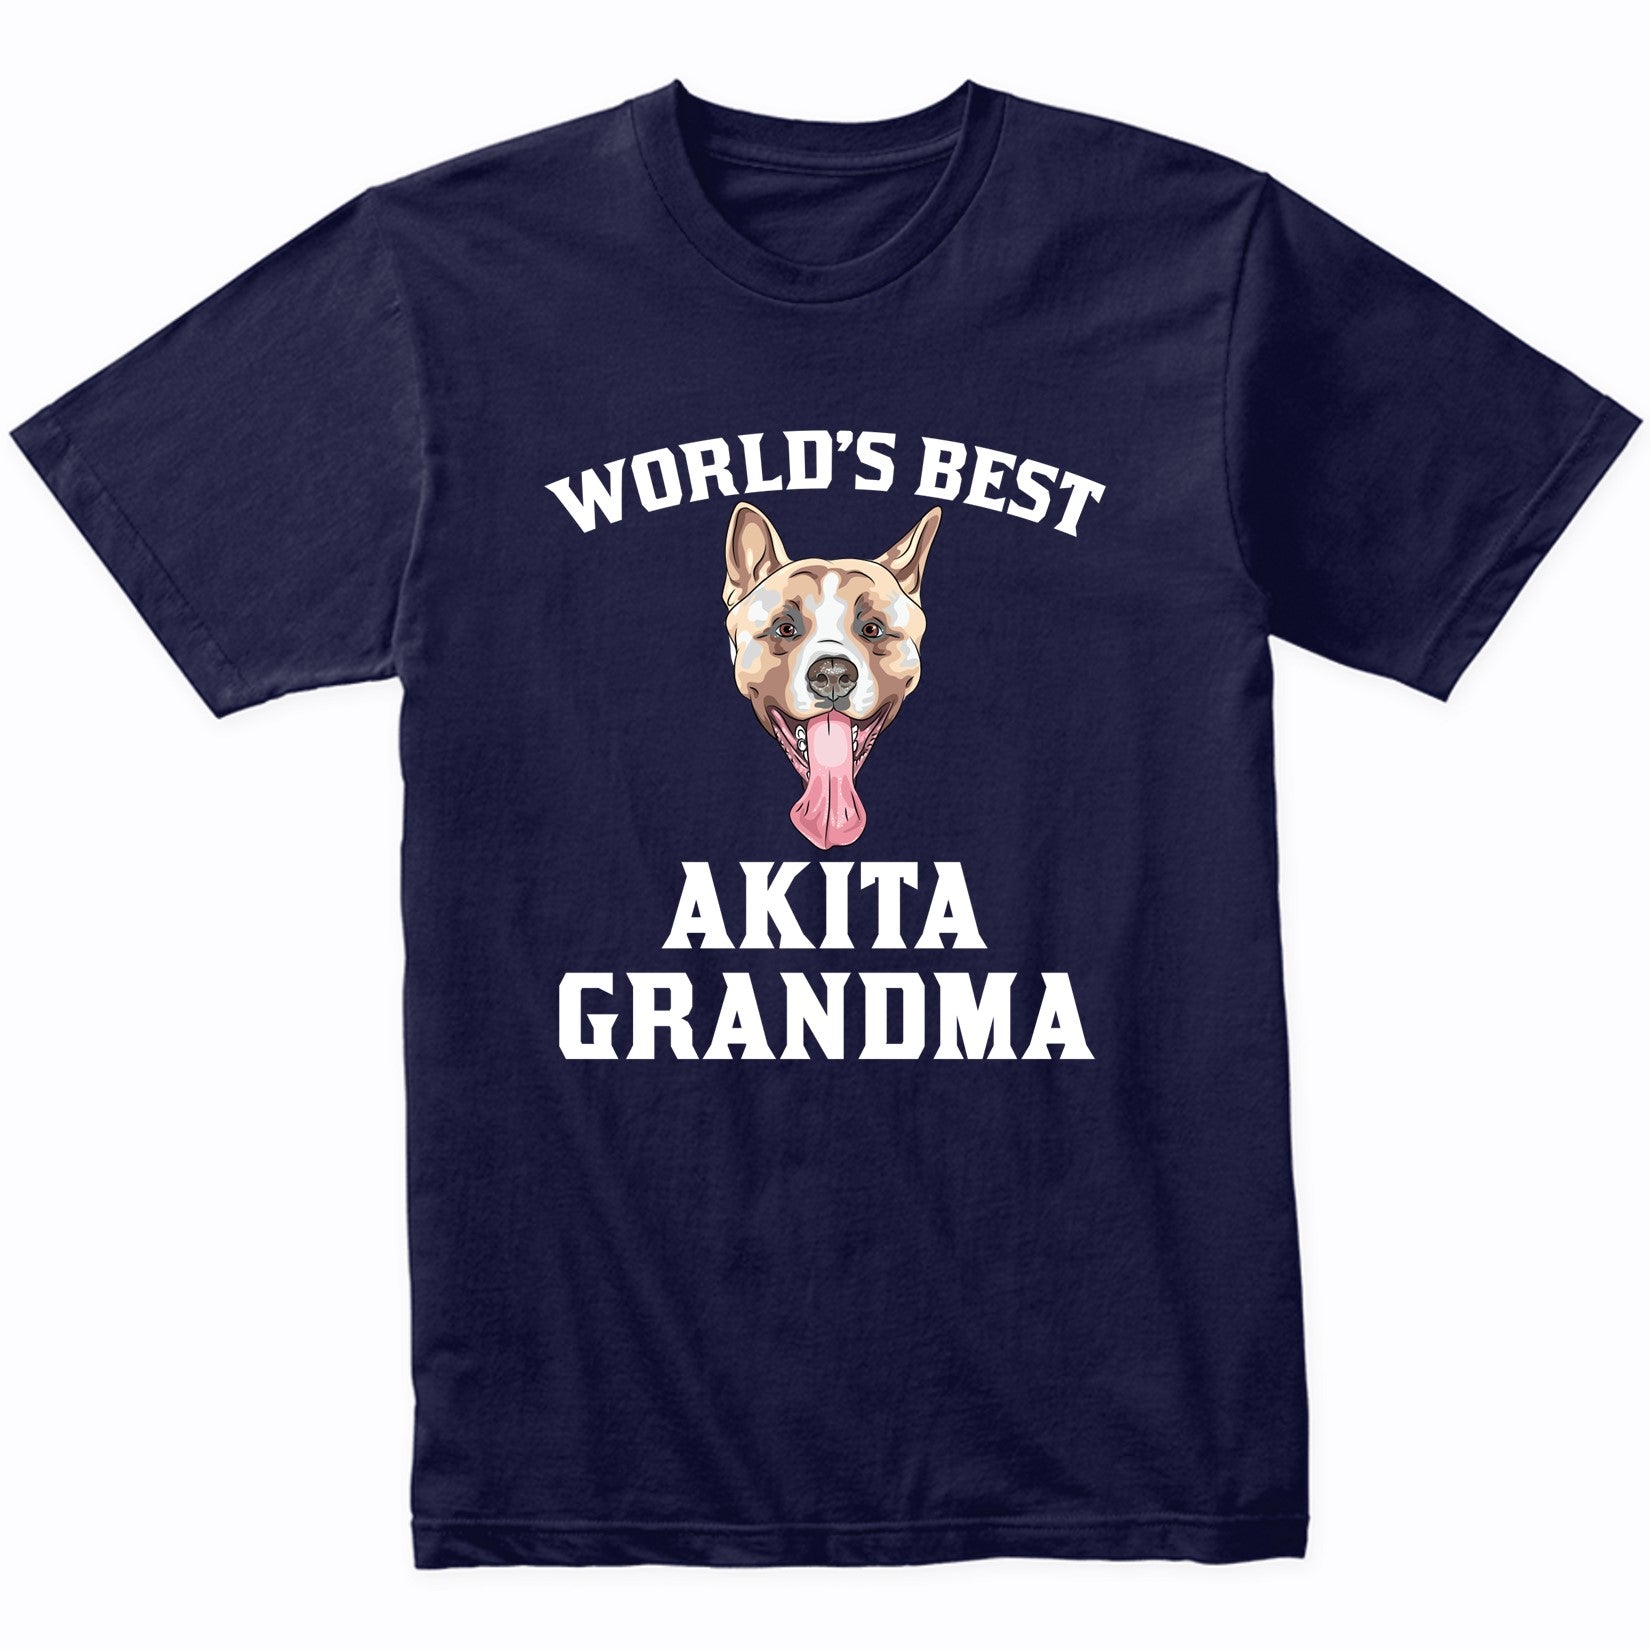 World's Best Akita Grandma Dog Graphic T-Shirt